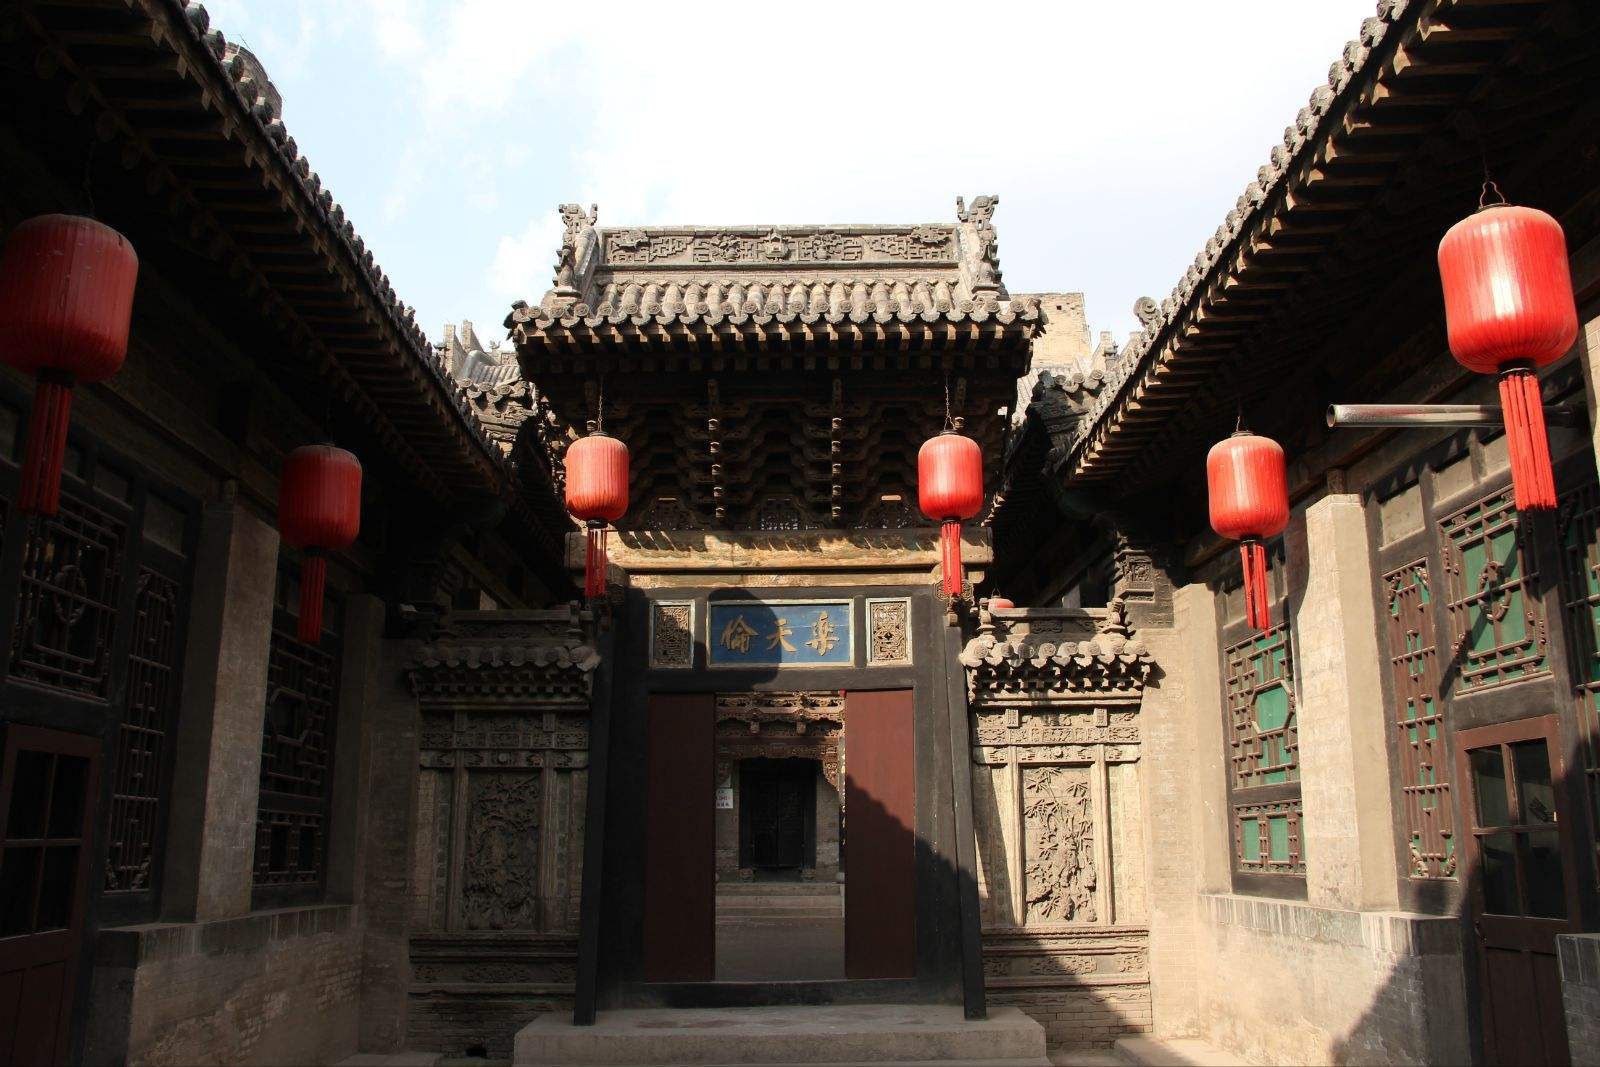 渠家大院位于山西省晋中市祁县古城始建于清朝的晋商家族宅院整座大院